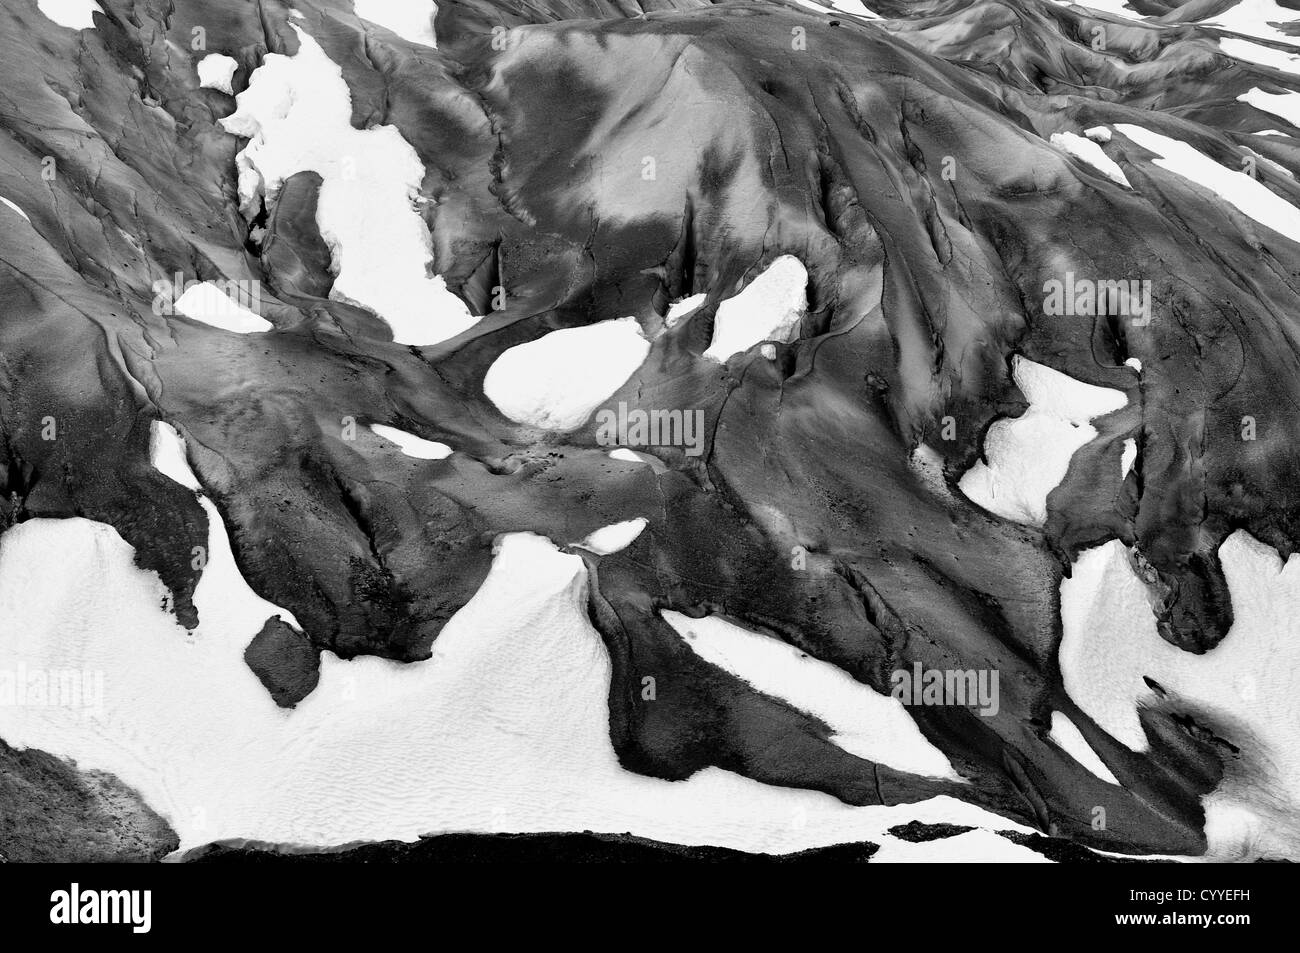 Les modèles de glace et de neige sur le Glacier Reid à Glacier Bay National Park, Alaska. Banque D'Images